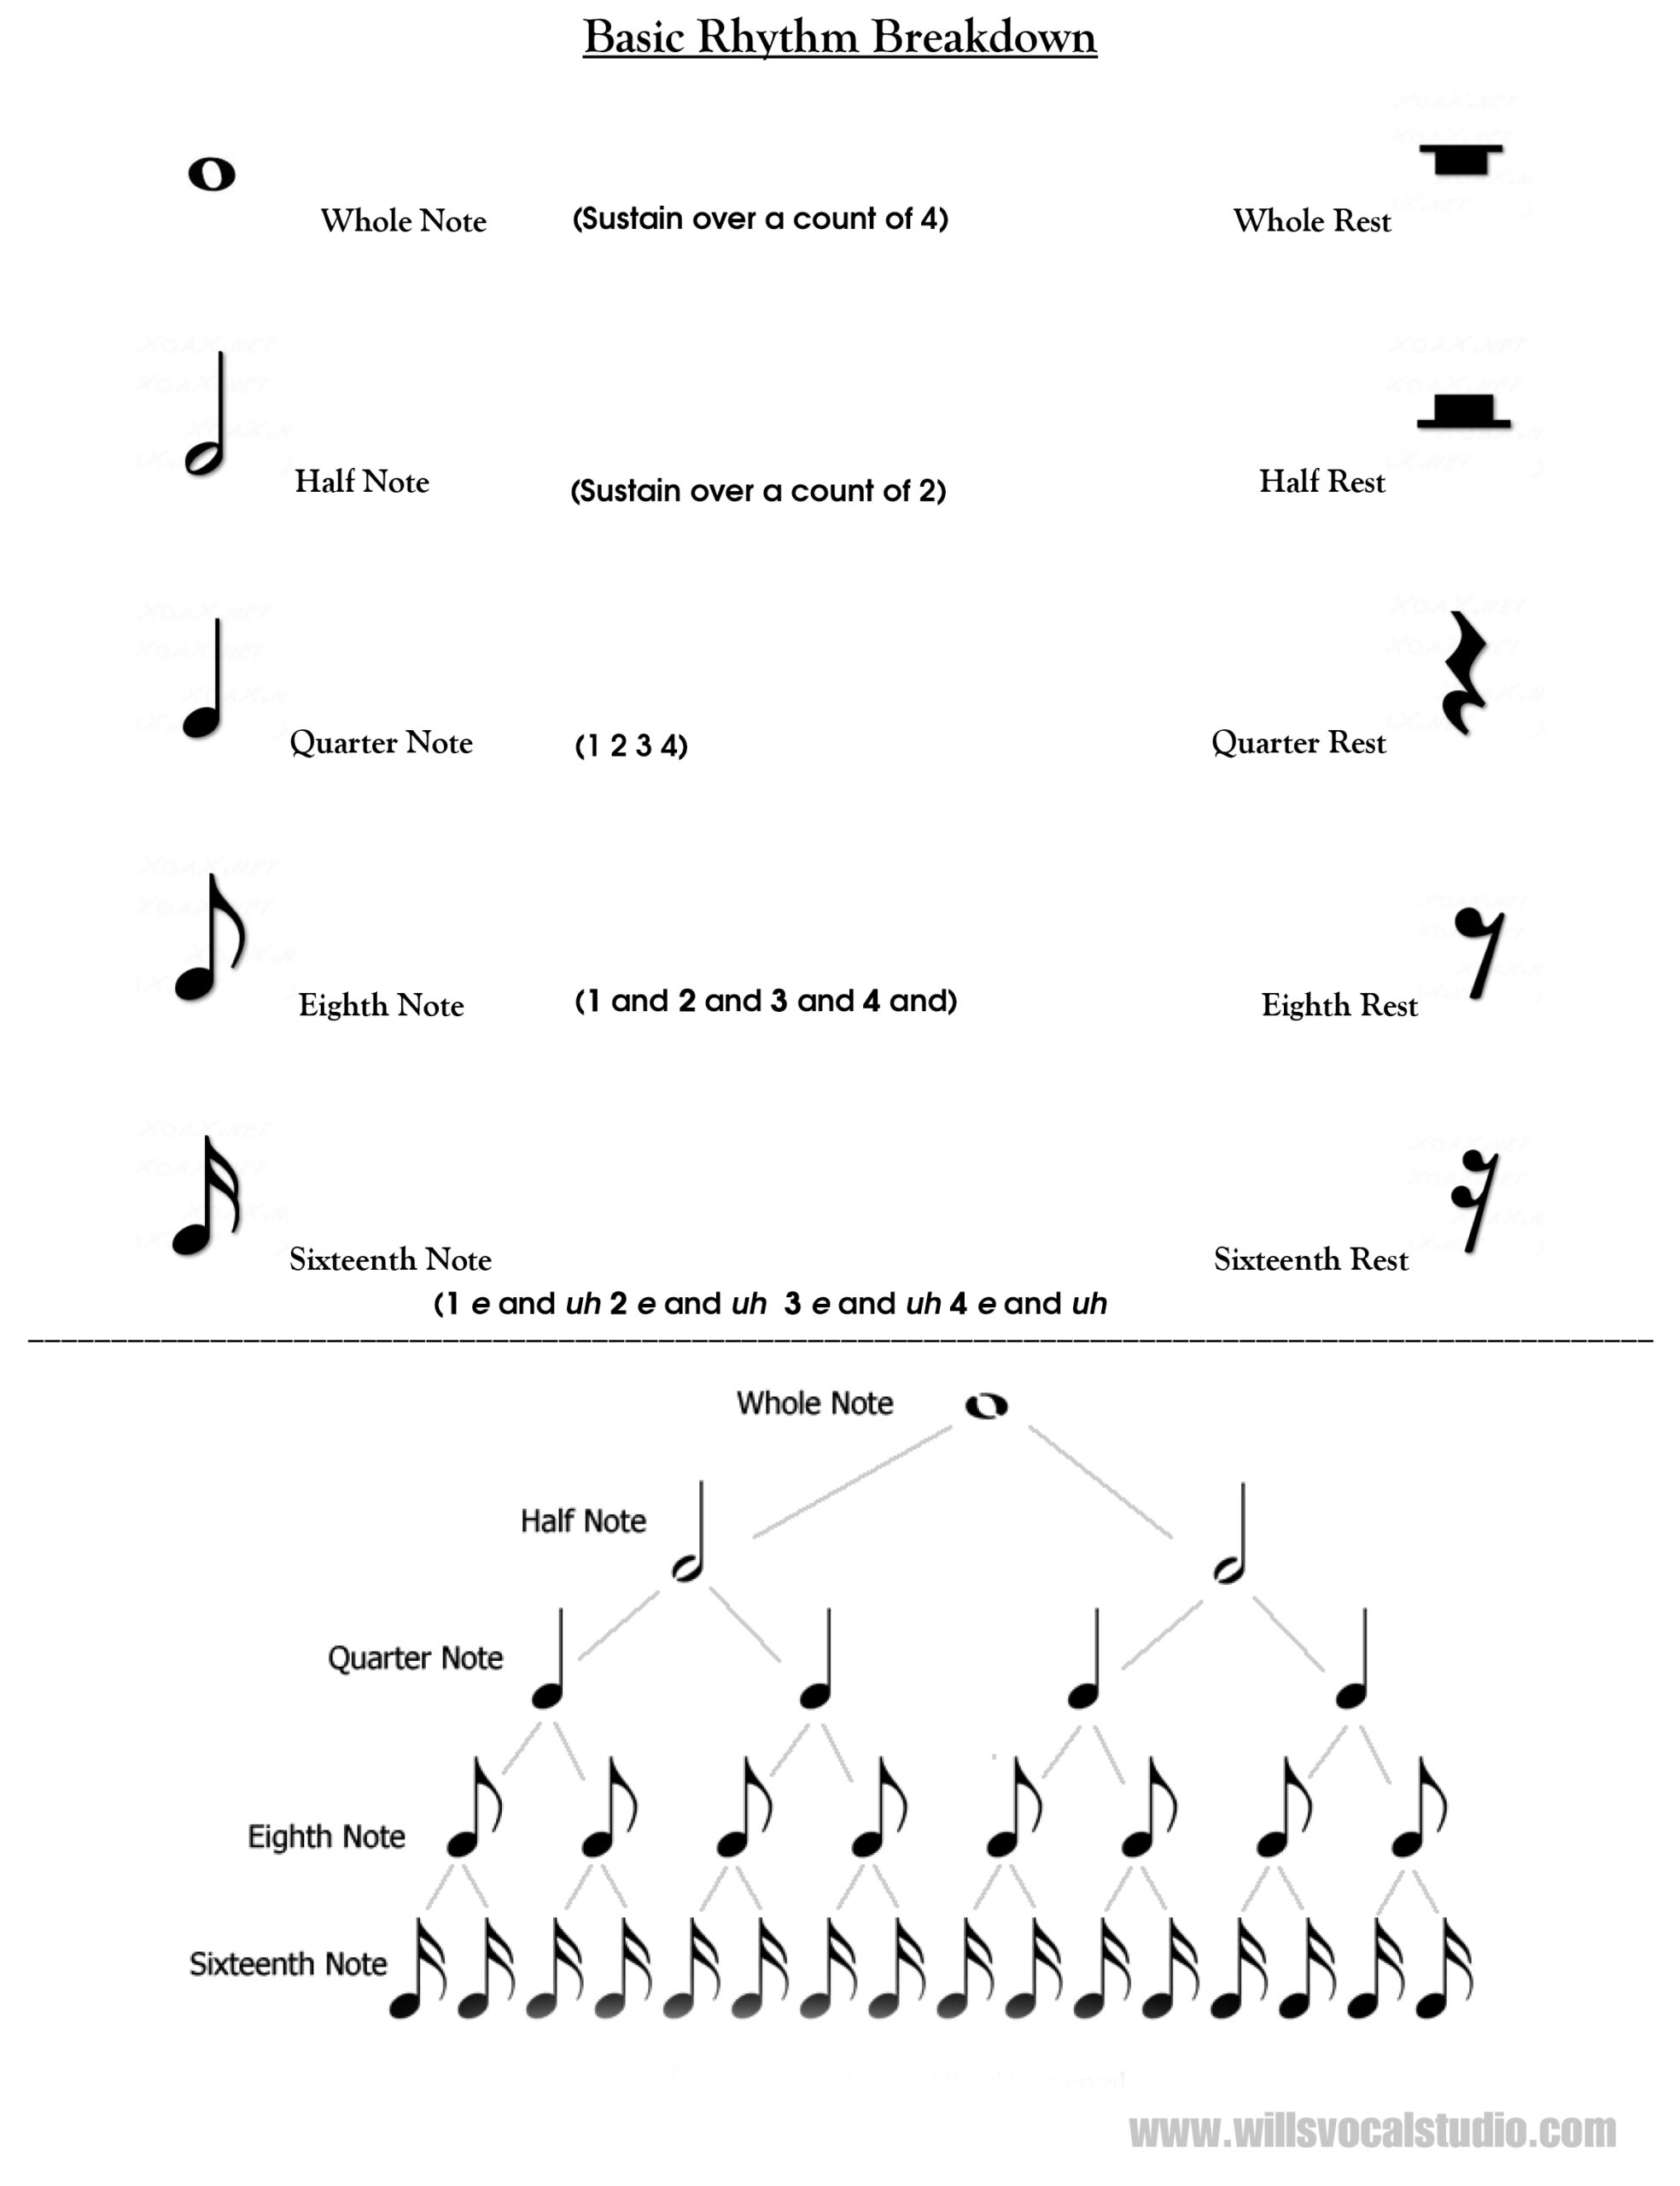 WVS Basic Rhythmic Chart